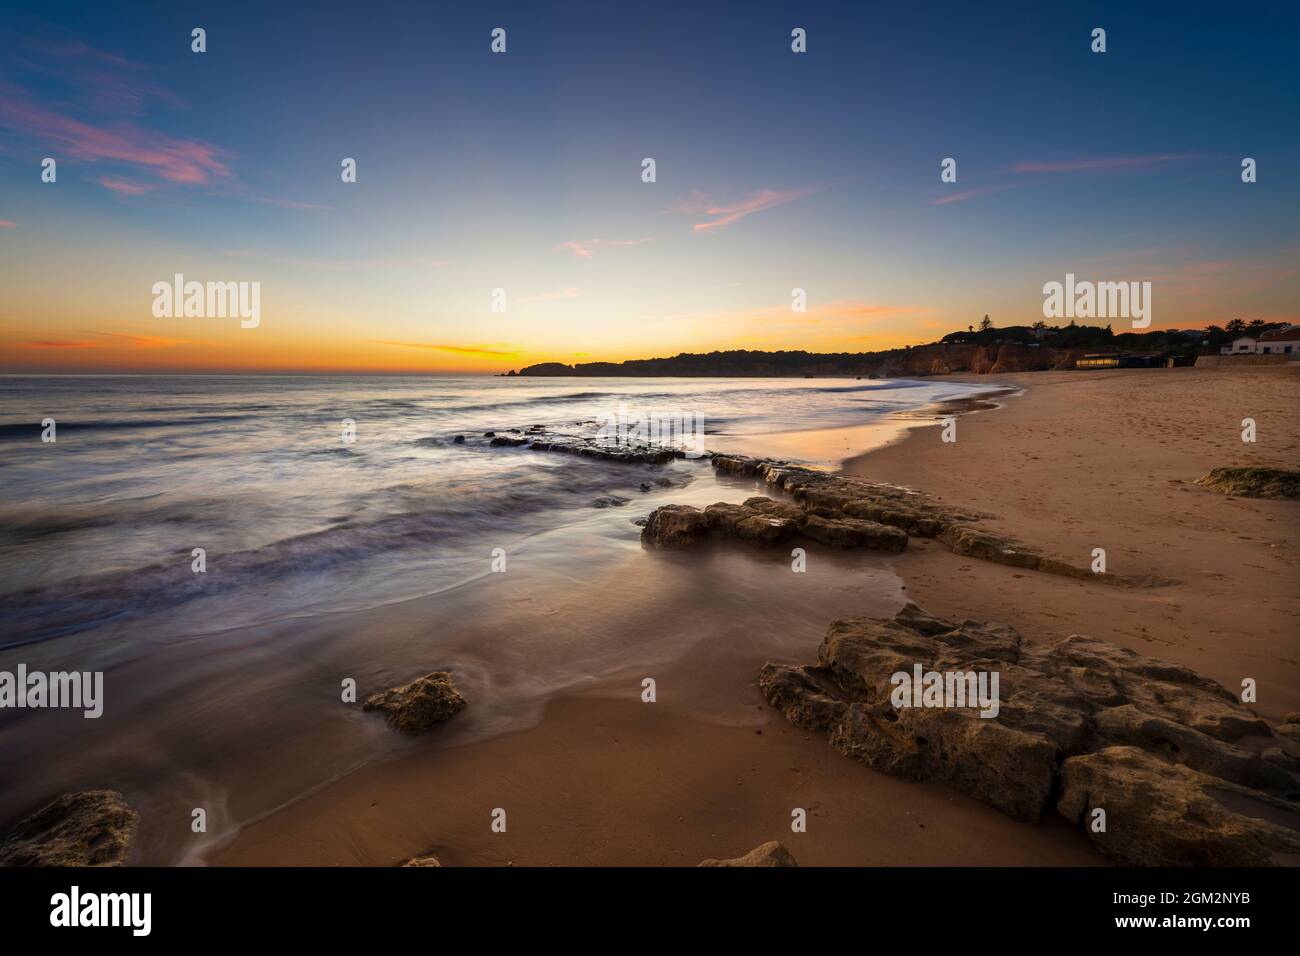 Panoramablick auf den Strand Vau (Praia do Vau) bei Sonnenuntergang, in Portimao, Algarve, Portugal; Konzept für Sommerurlaub am Strand und Reisen in Portugal Stockfoto